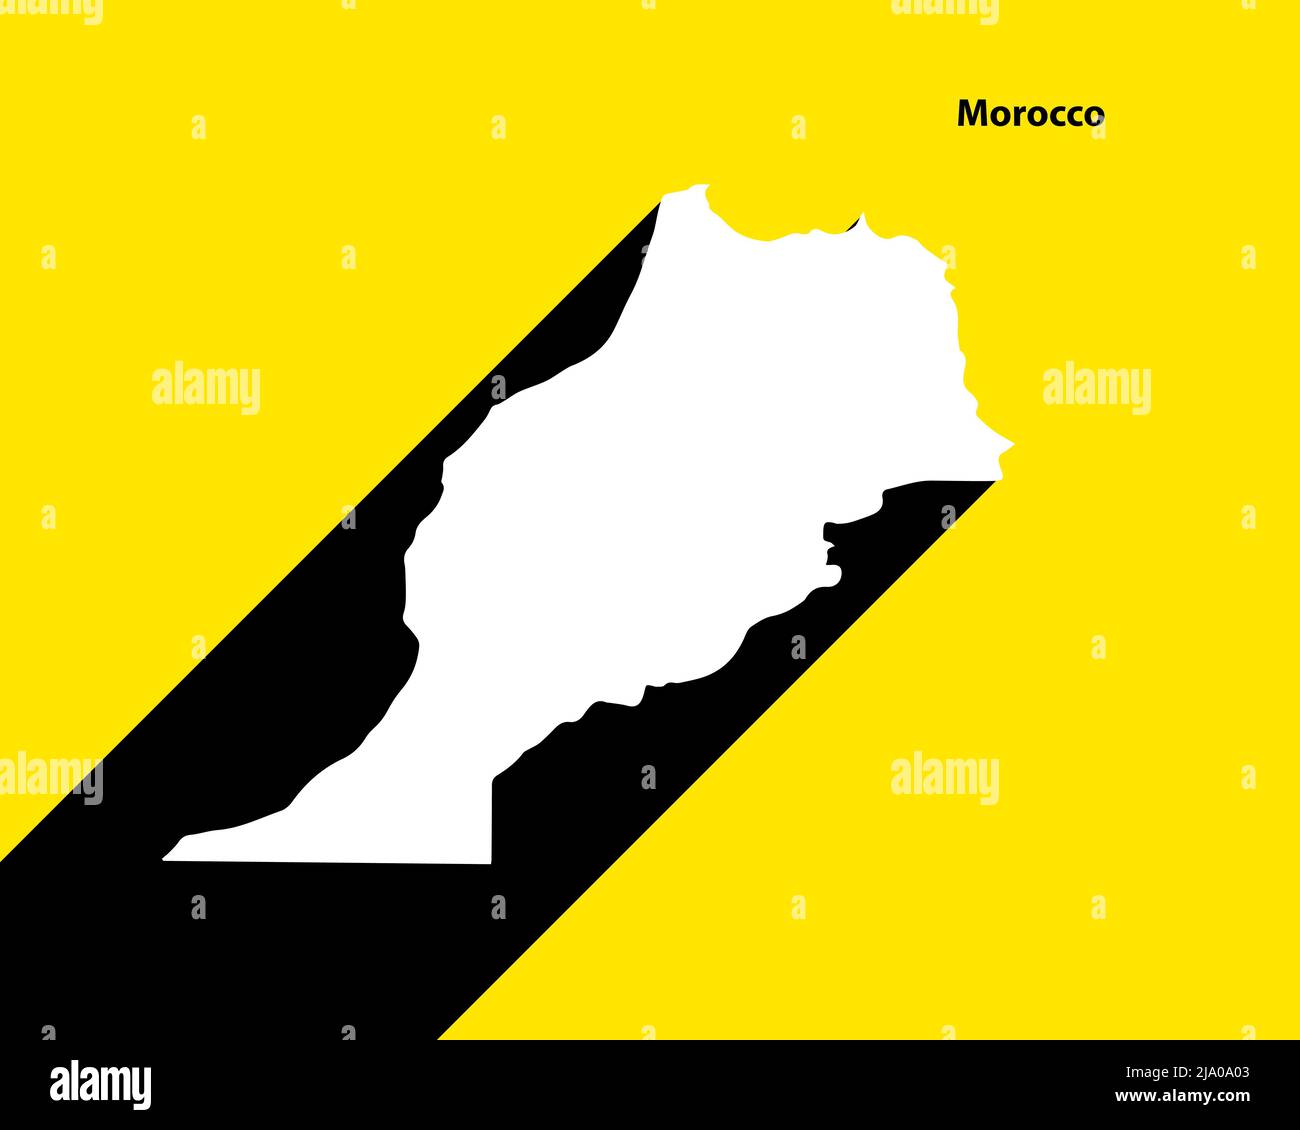 Mappa Marocco su poster retrò con lunga ombra. Segno vintage facile da modificare, manipolare, ridimensionare o colorare. Illustrazione Vettoriale